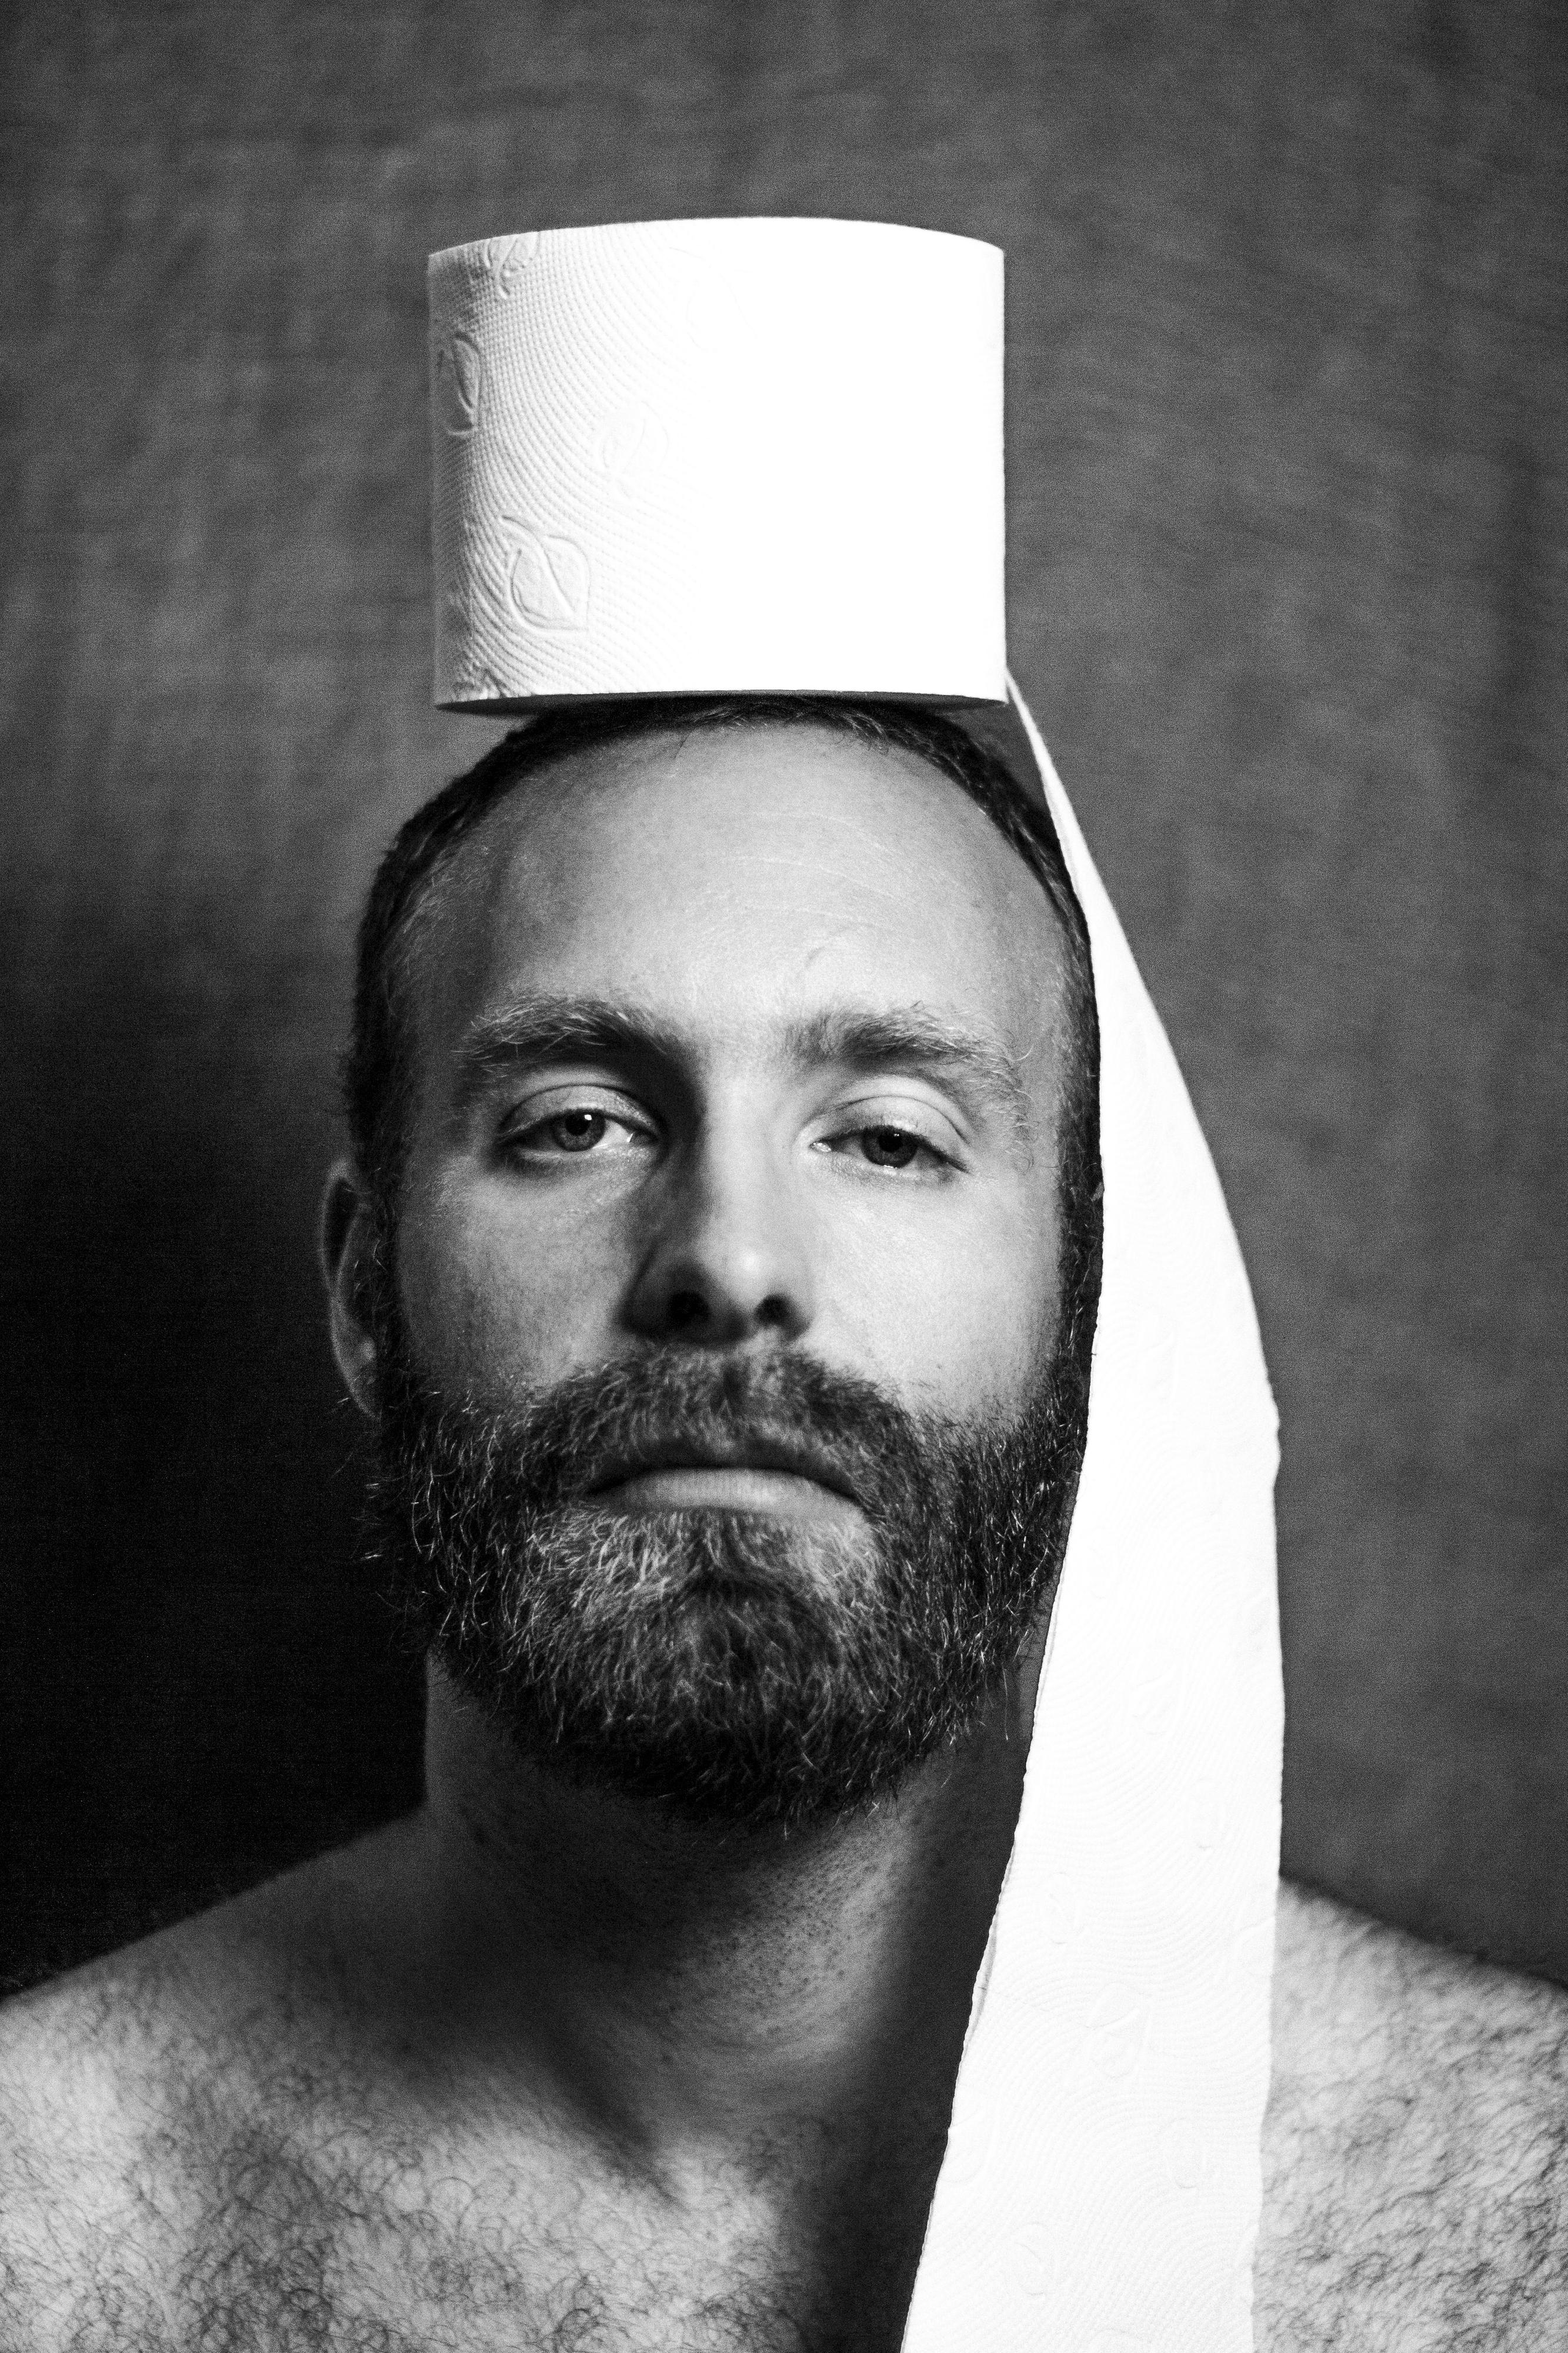 Porträt eines bärtigen Mannes. Auf seinem Kopf befindet sich eine Rolle Toilettenpapier - etwas davon fällt bis auf seine Schulter.